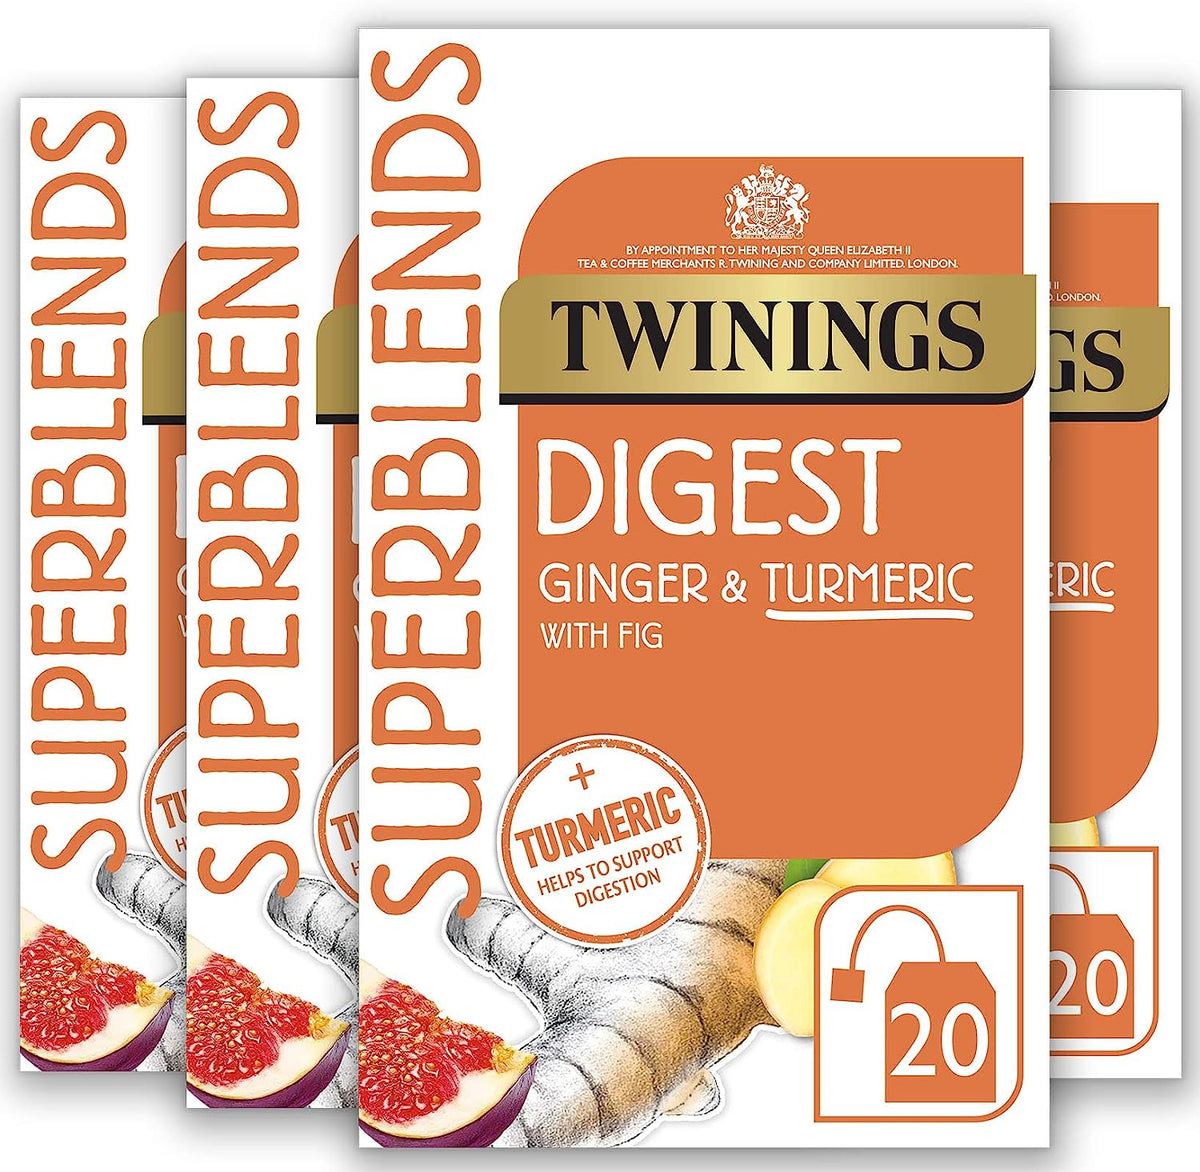 Twinings Digest Ginger & Turmeric 20 Tea Bags (40 g) Beautiful